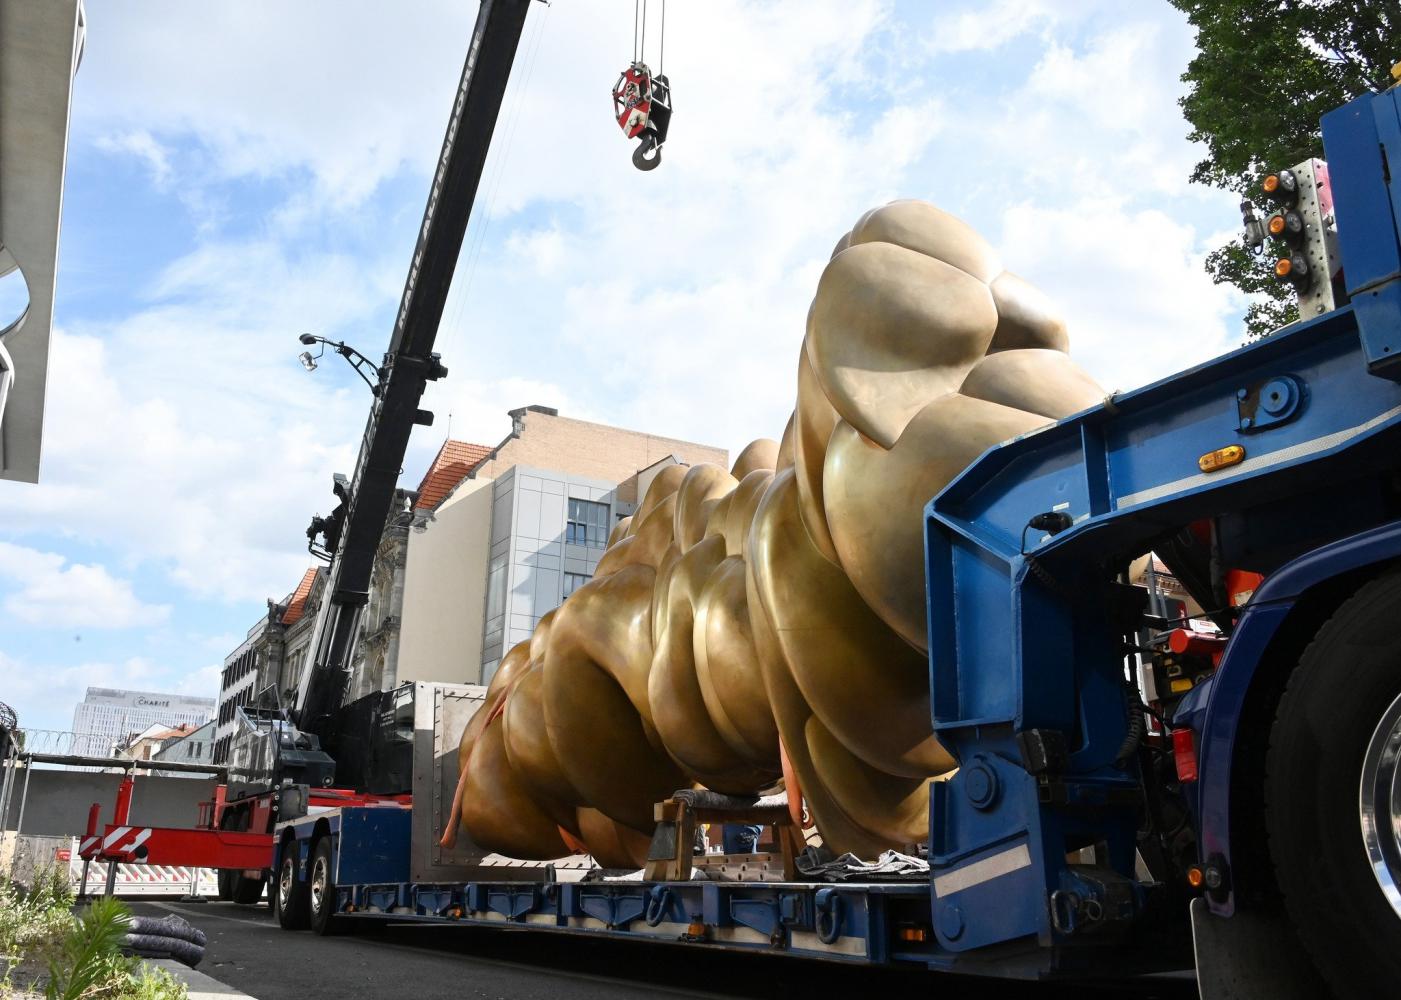 Die Skulptur "Werdendes" beim Antransport am Bundestag in Berlin